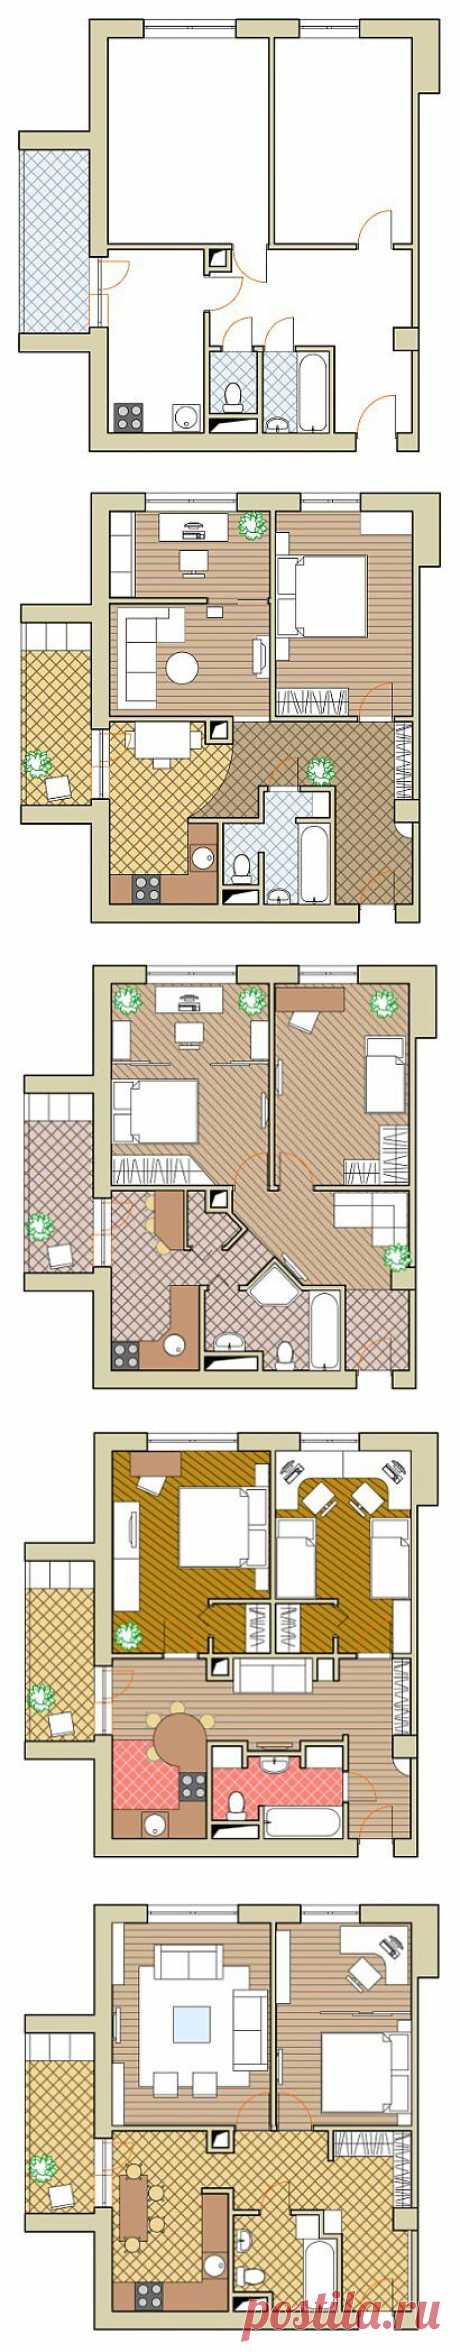 Планировка недели: двушка в кирпичном доме серии II-67 . Двухкомнатные квартиры представлены в двух планировках: 48,7 квадратного метра – общая площадь, комнаты 15,9 и 11,6 квадратного метра; и 49,2 квадратного метра – общая, комнаты 16,1 и 12,9 квадратного метра, санузел всегда раздельный. Мы рассмотрим 5 вариантов планировки квартиры площадью 49,2 квадратного метра.